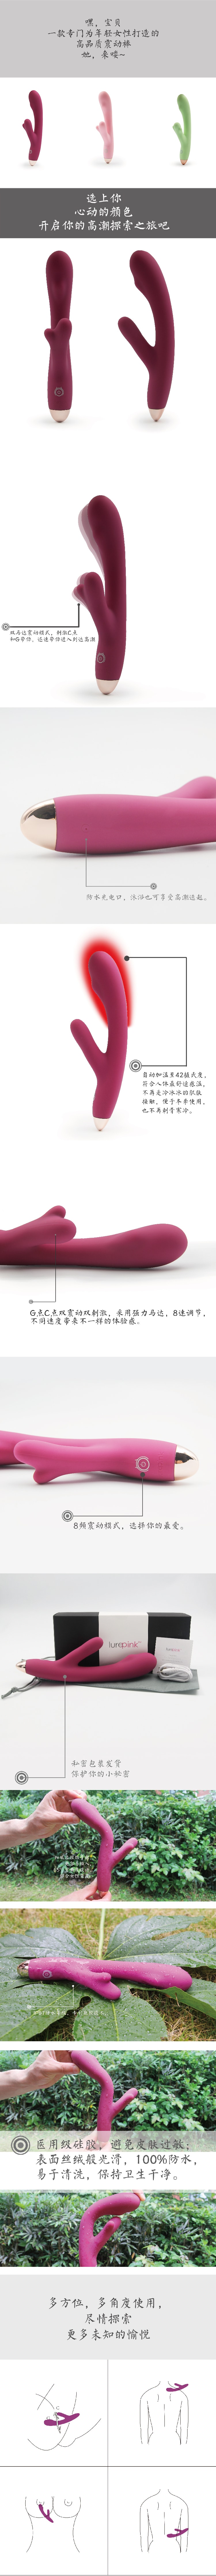 麗波 震動棒按摩棒 自動加溫8頻變速 性玩具成人用品G點C點高潮情趣玩具 女性情趣用品 矽膠不過敏 粉紅色